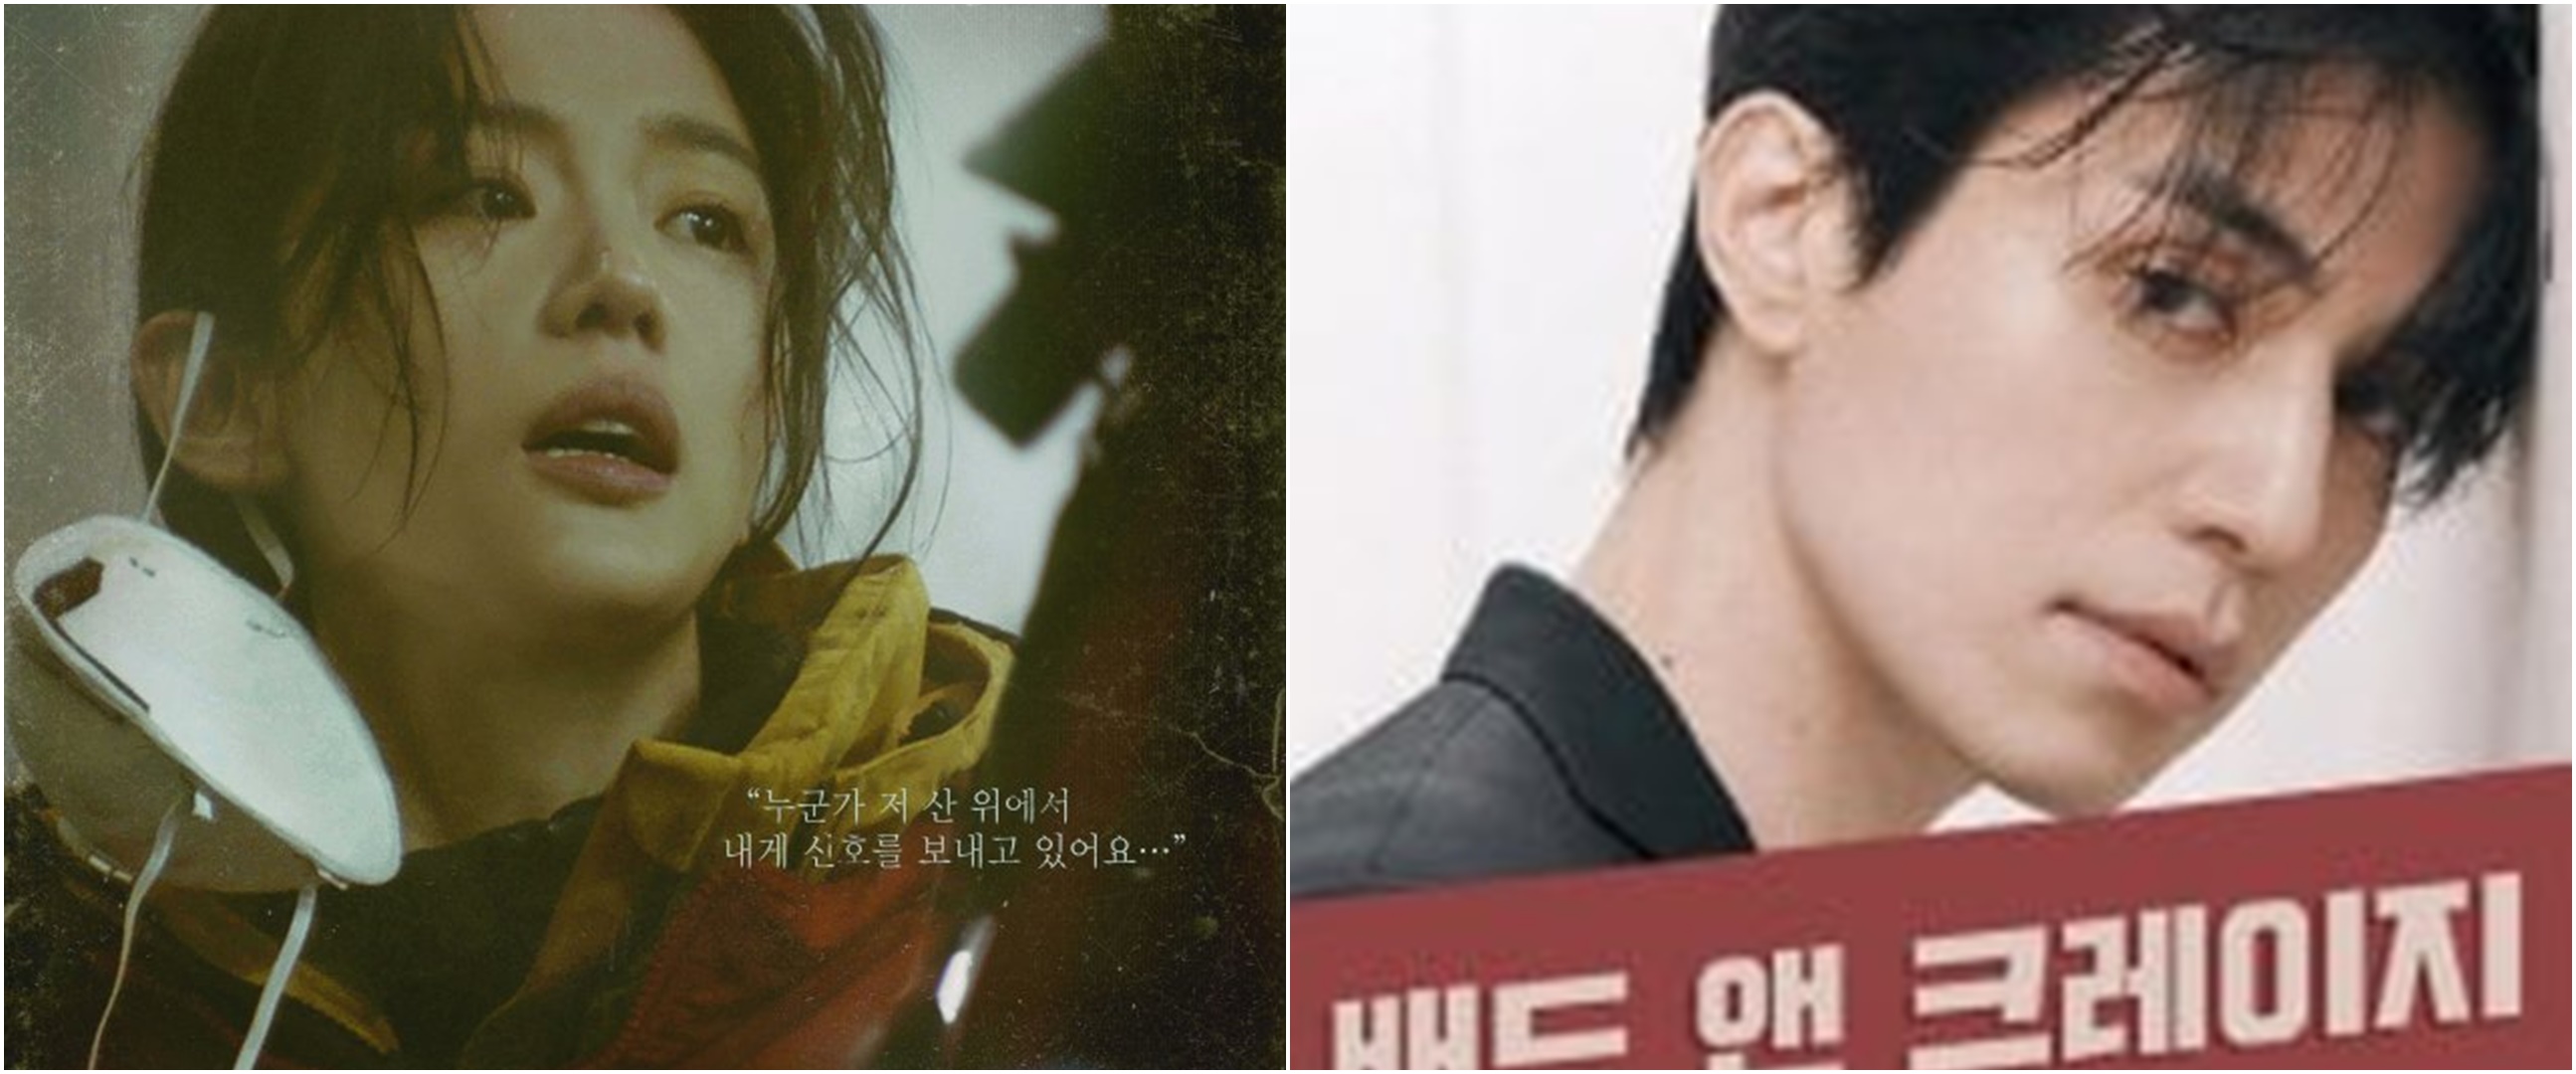 7 Drama Korea iQiyi tayang akhir 2021, tema romantis hingga thriller